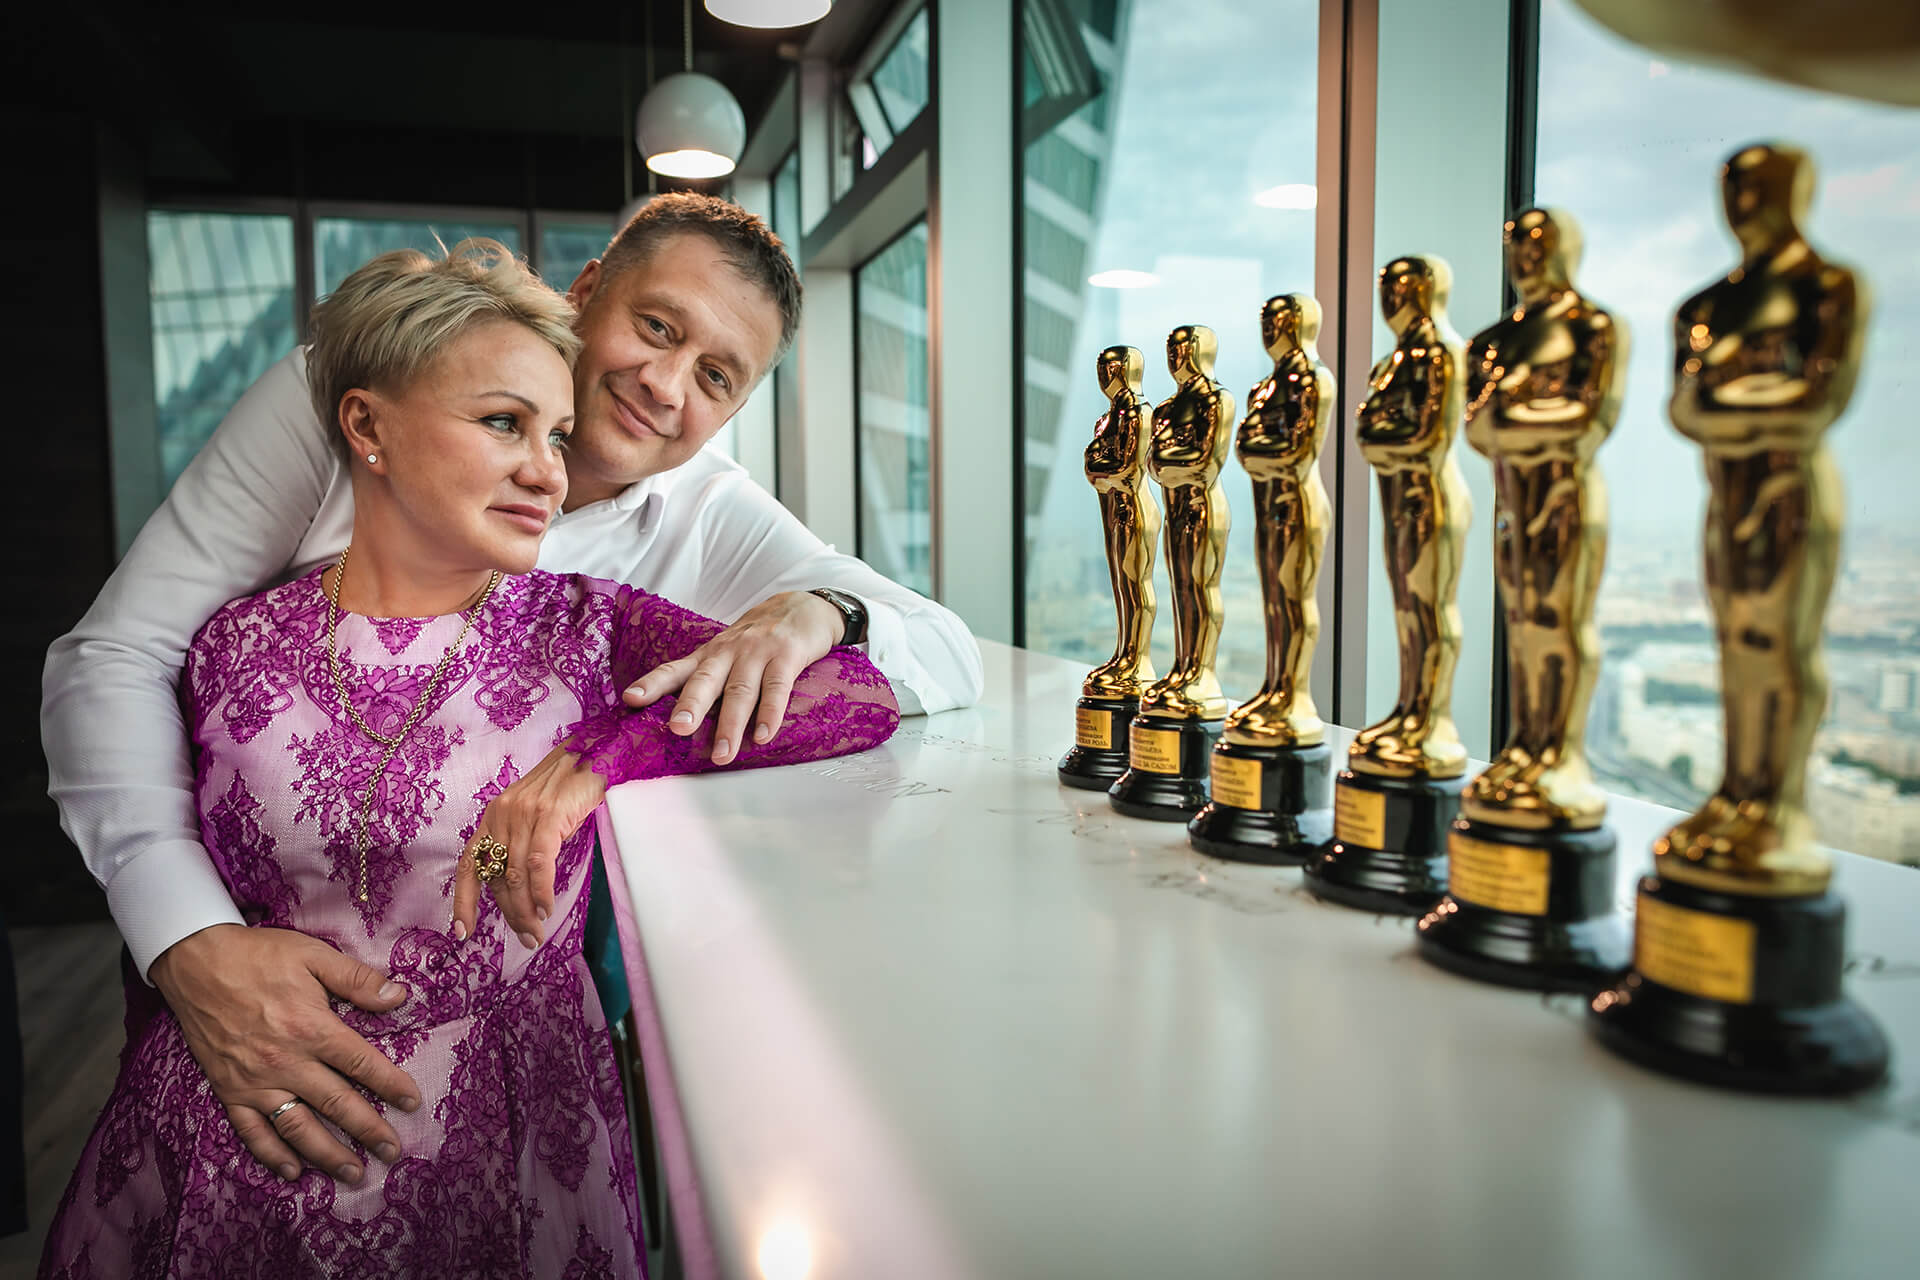 На этот раз муж подарил жене на её торжество фильм и праздник, которые были полностью стилизованы под вручение премии Оскар